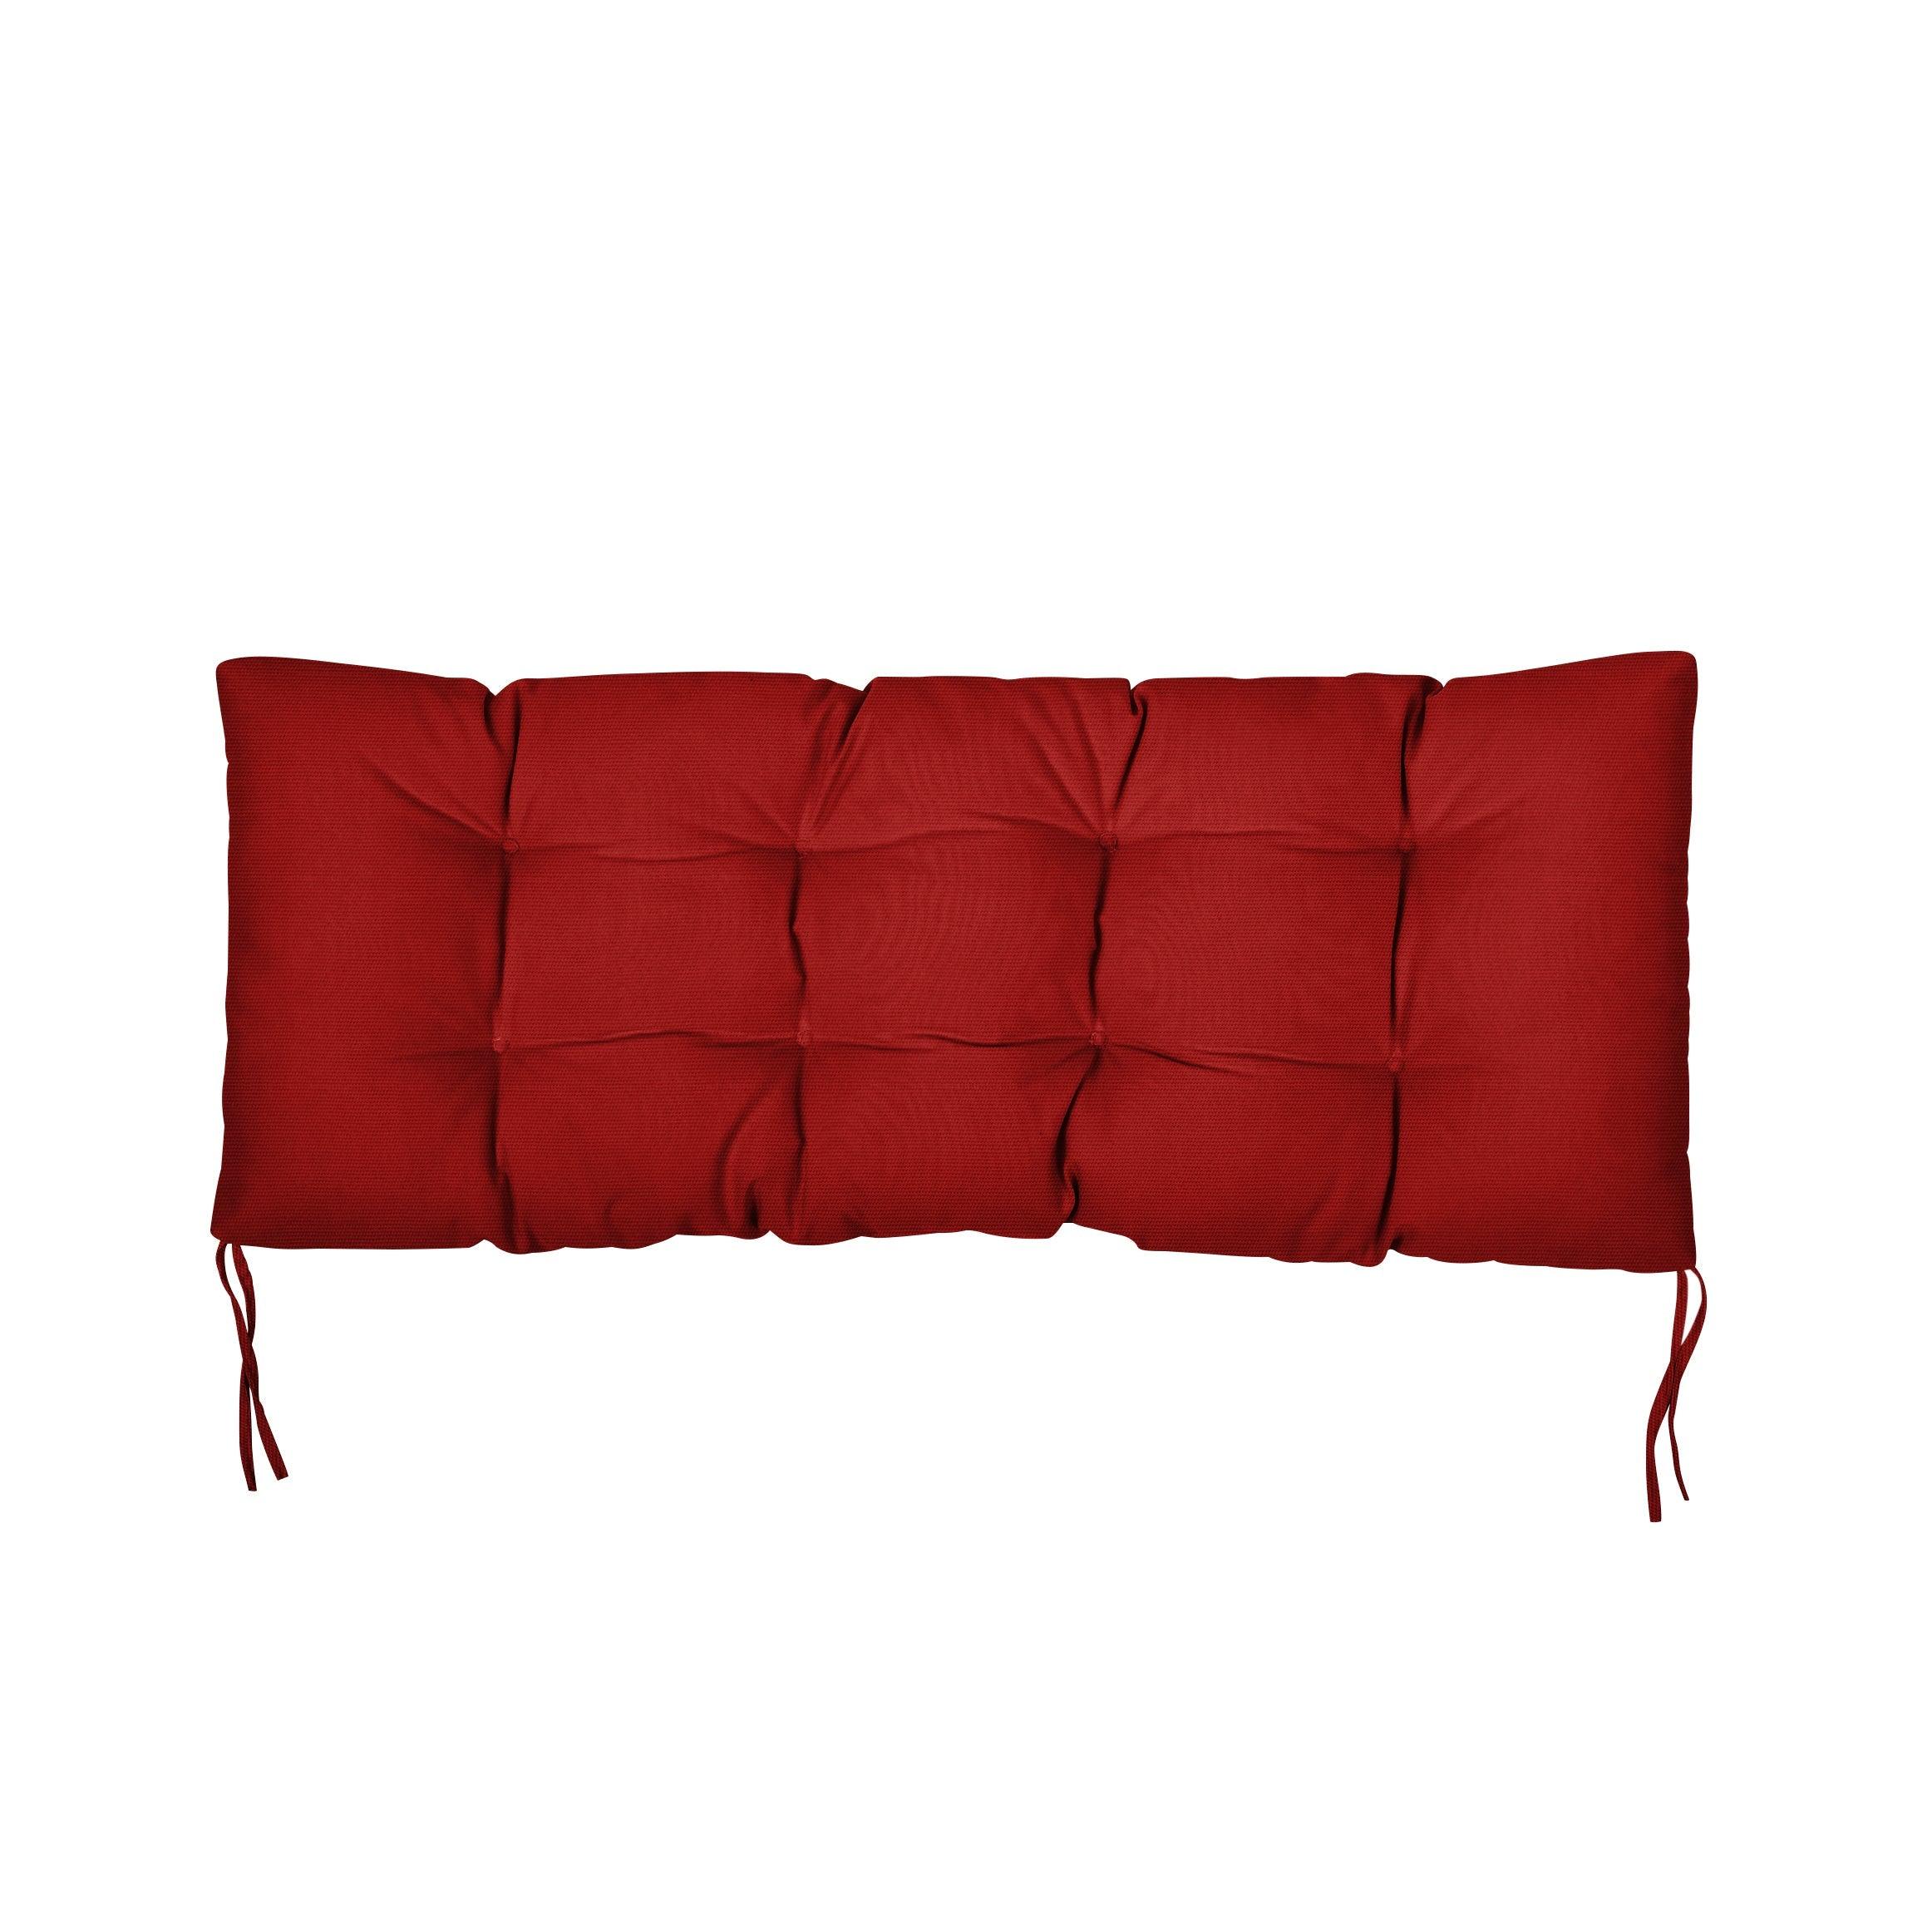 Sunbrella Tufted Indoor/Outdoor Bench Cushion - Sorra Home